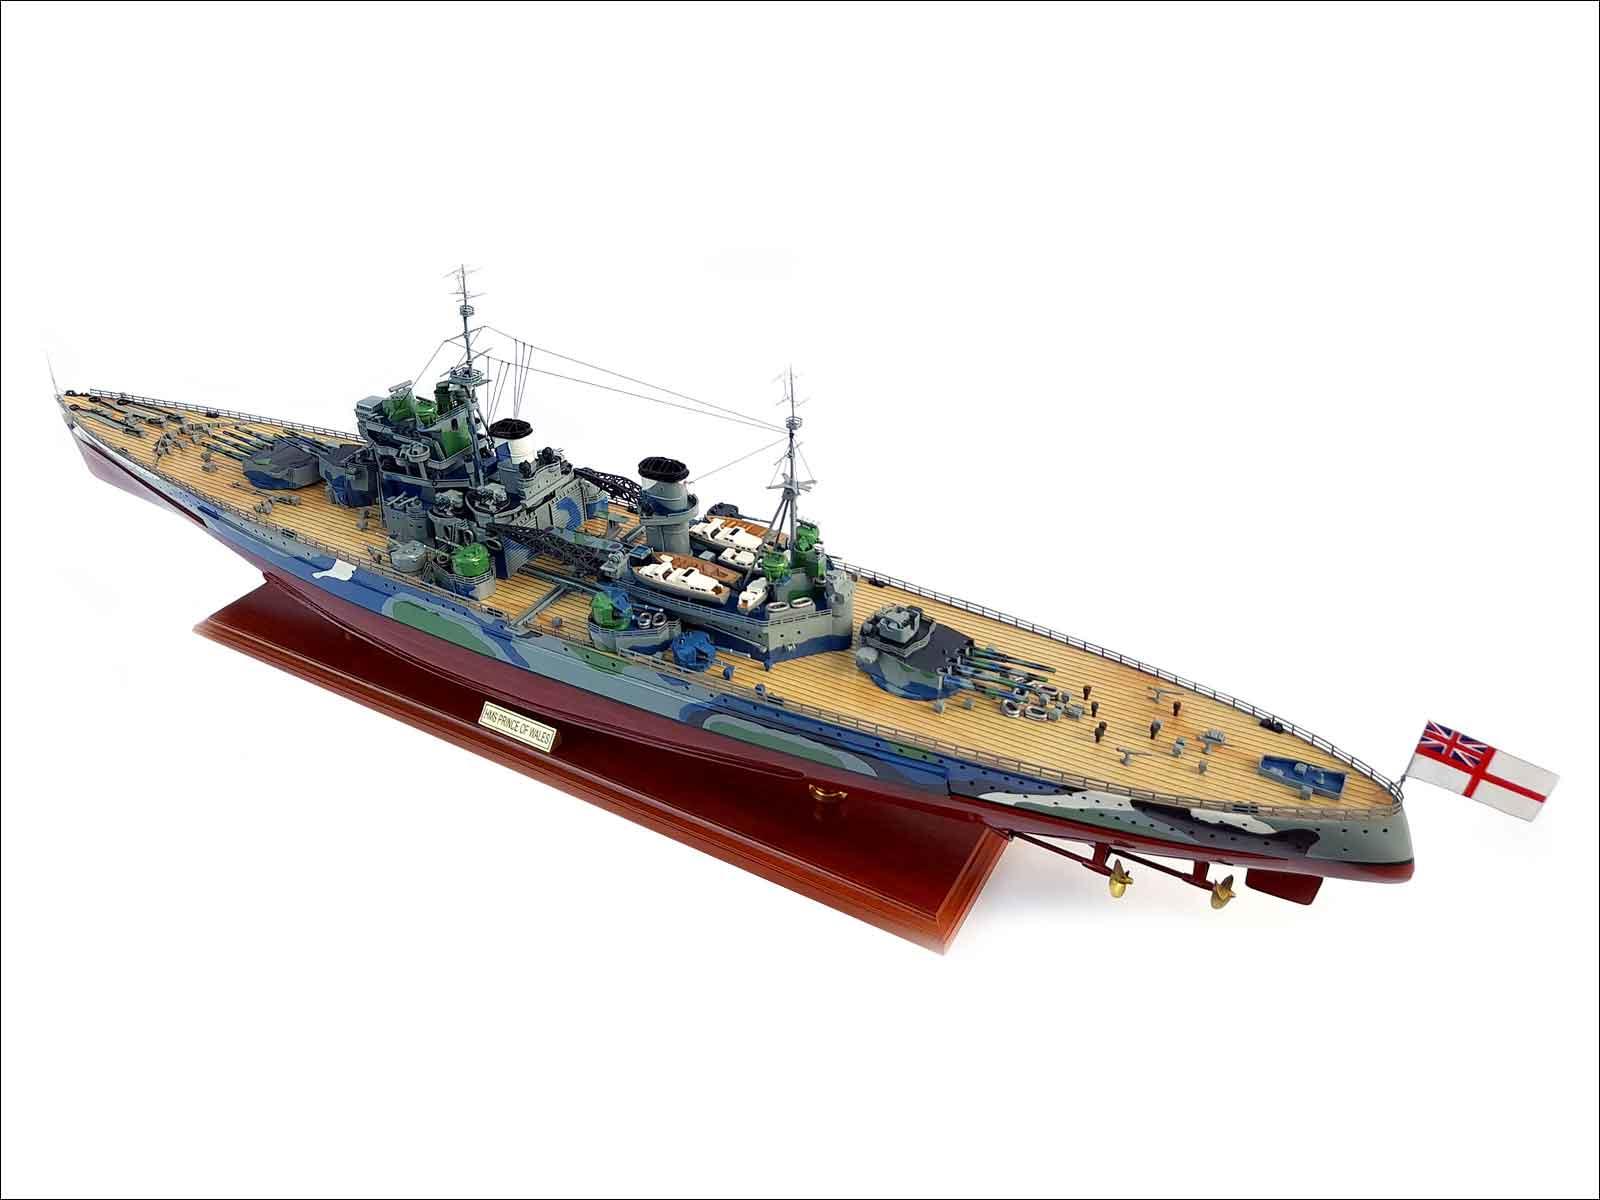 Fully built battleship model for display